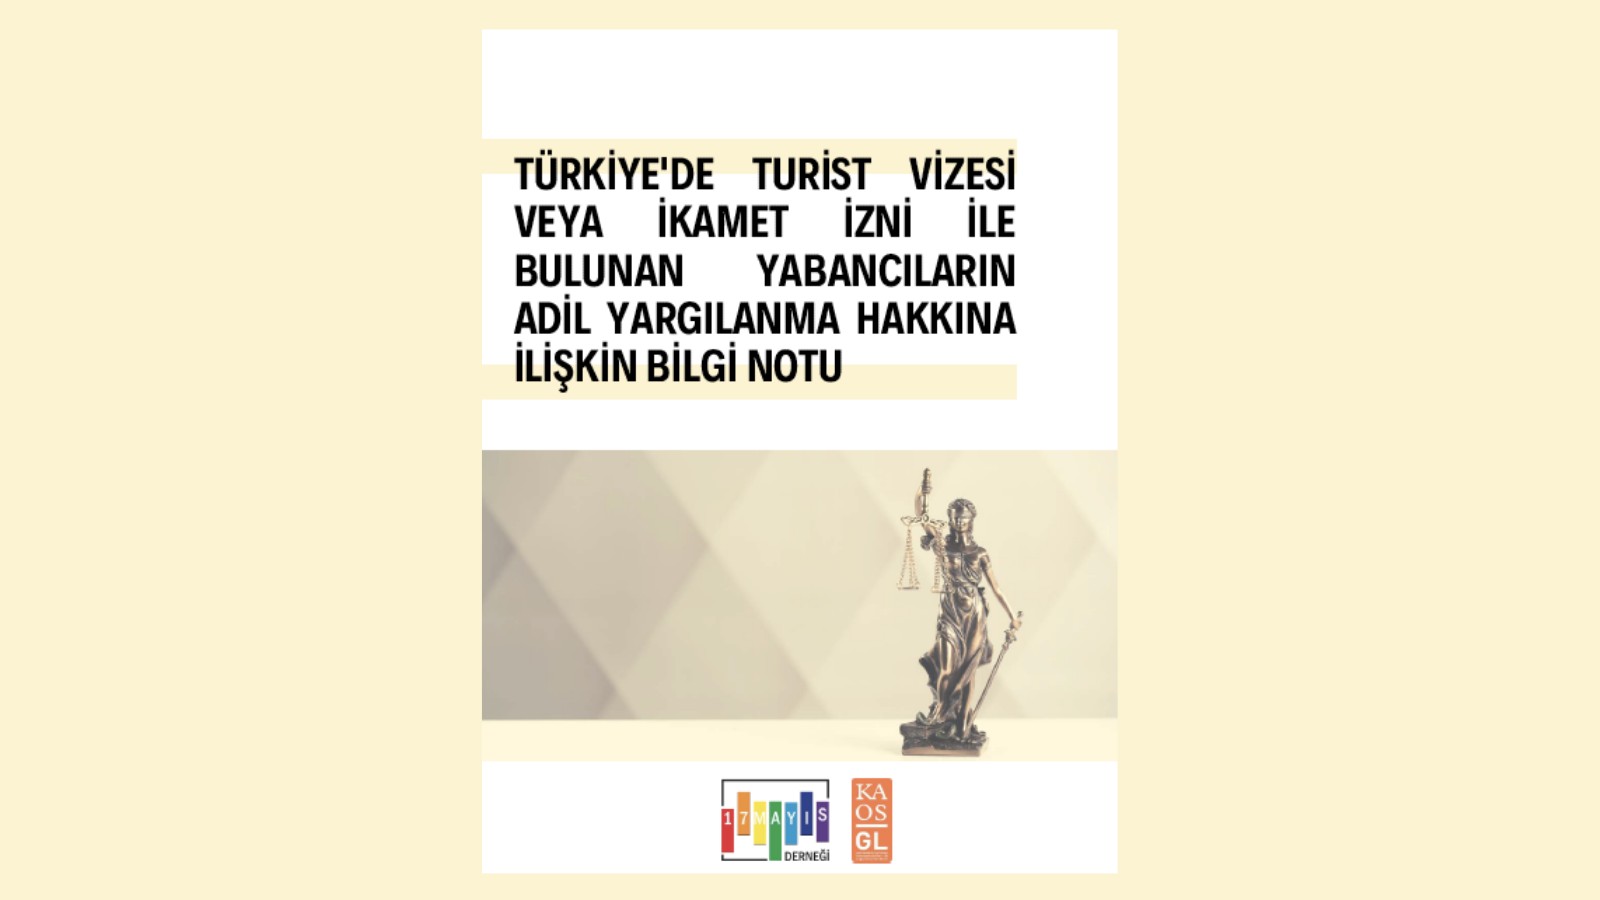 Türkiye’de Bulunan Yabancıların Adil Yargılanma Hakkına İlişkin Bilgi Notu - 17 Mayıs